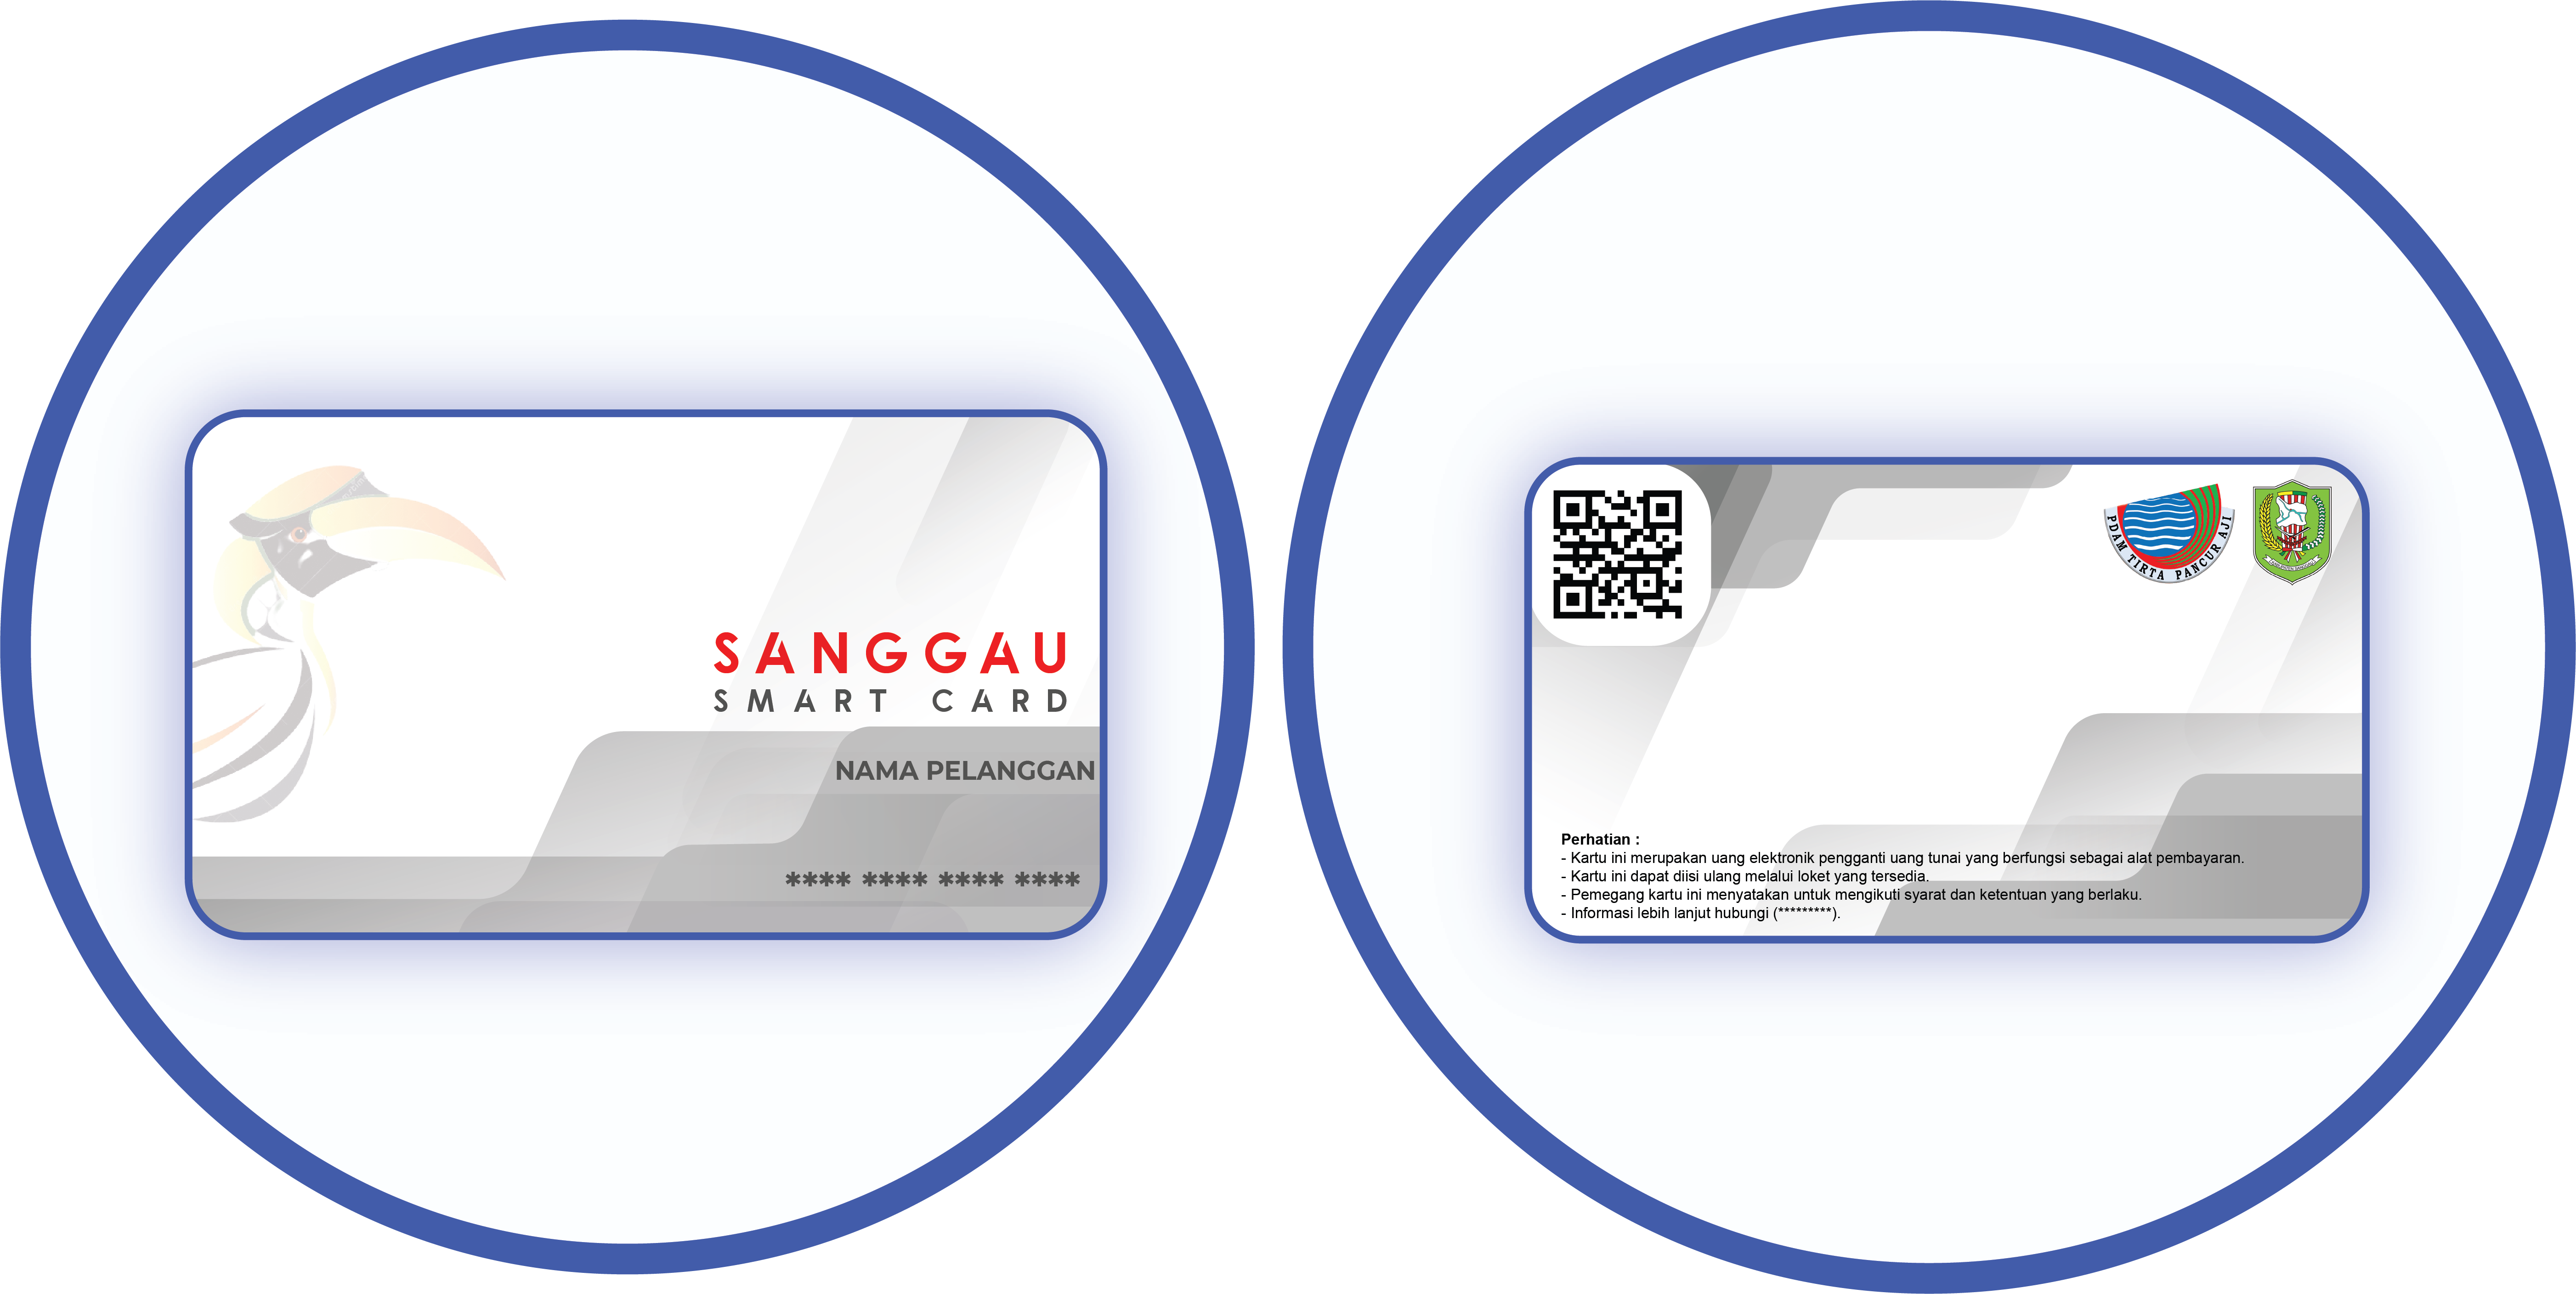 Sanggau Smart Card